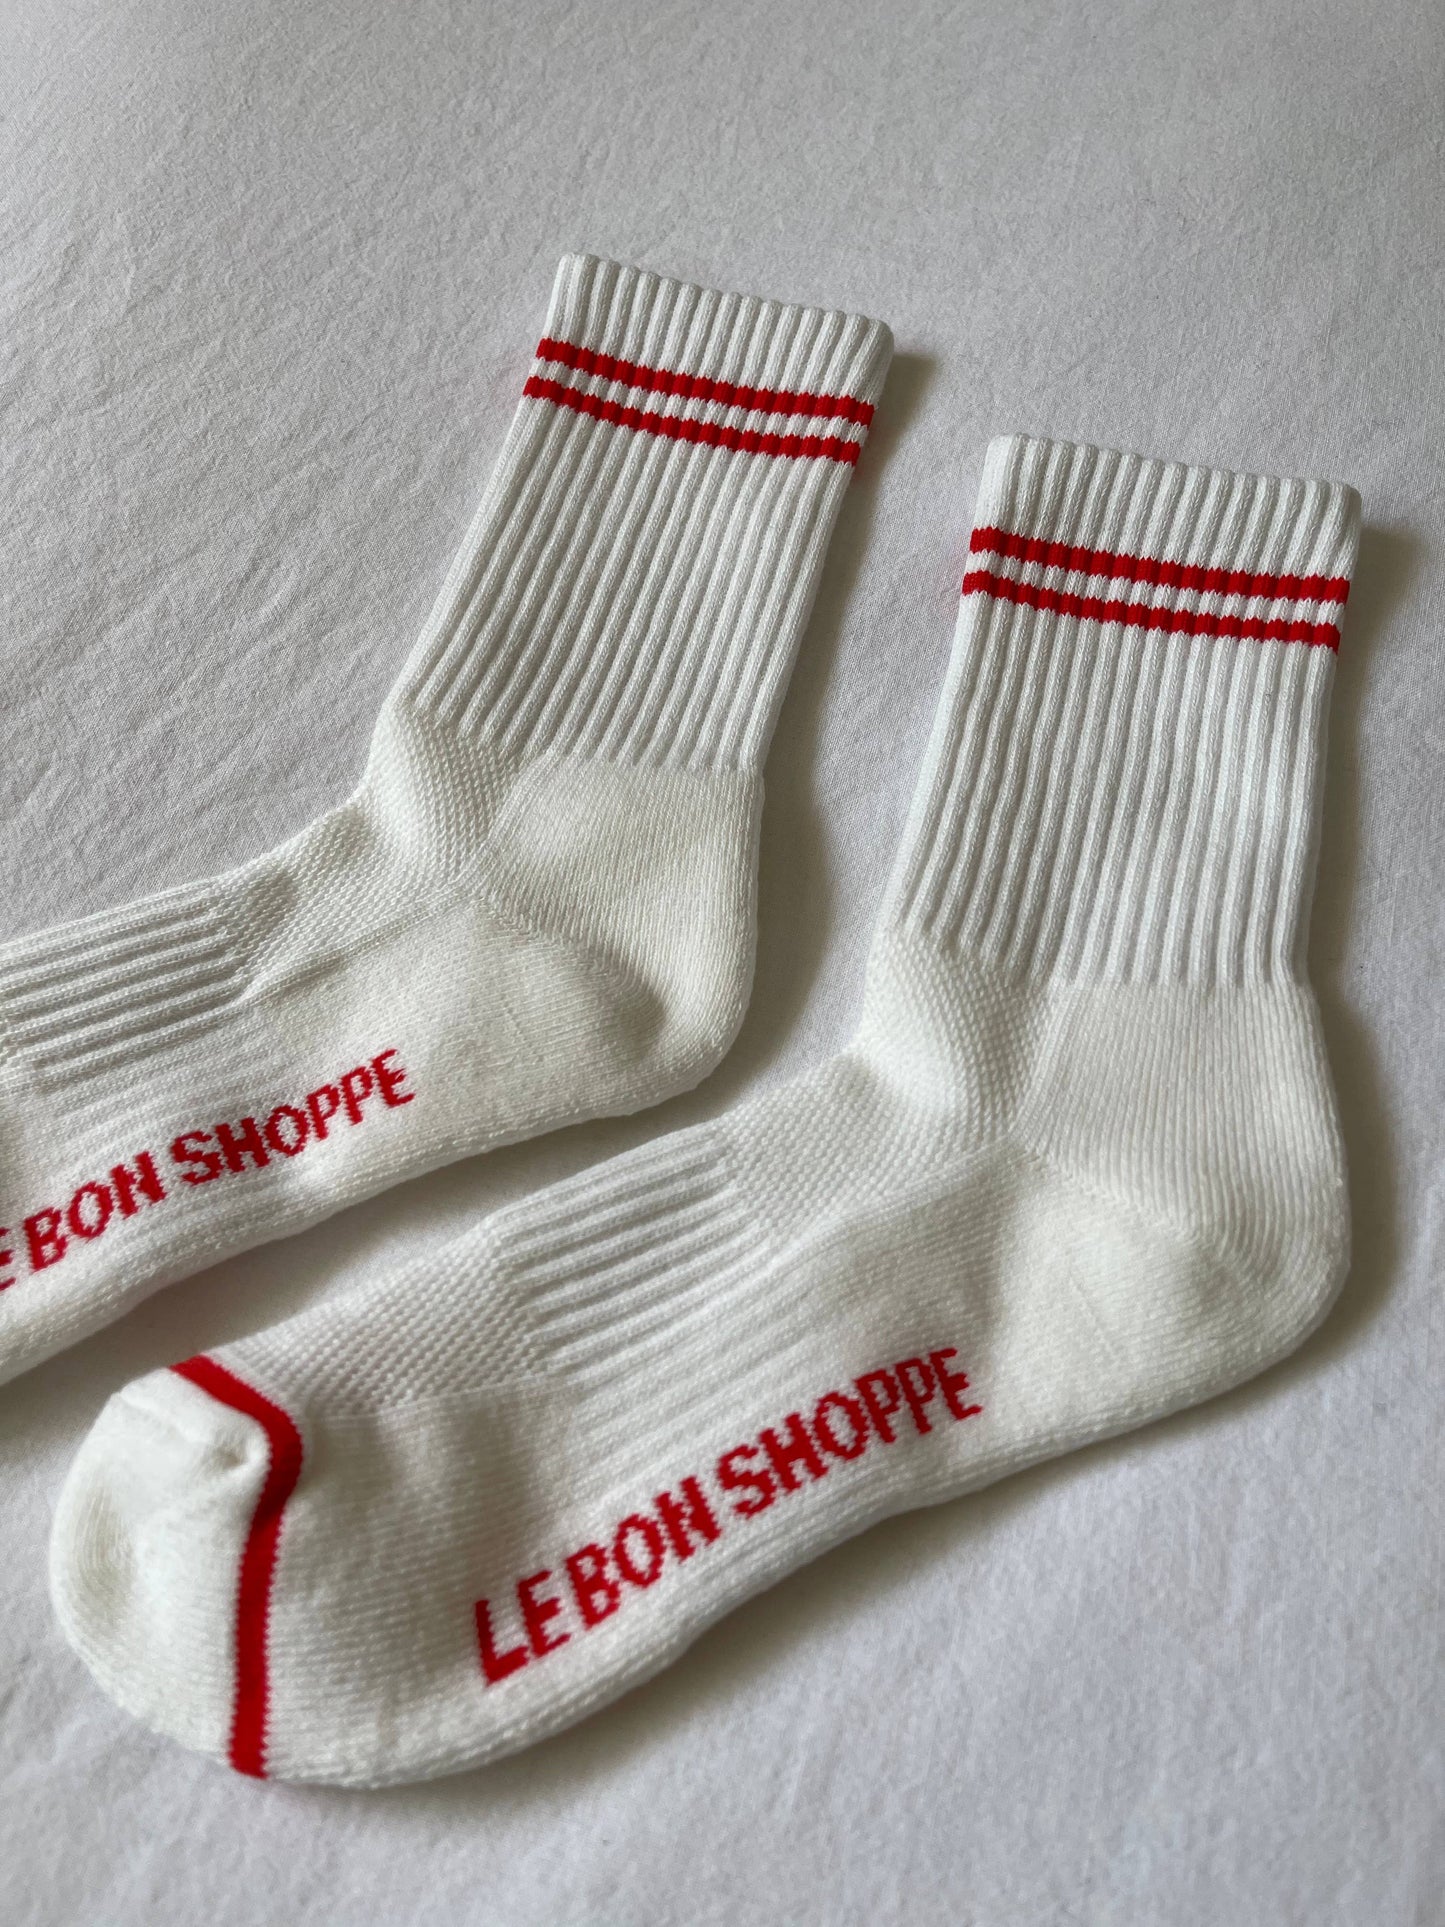 Le Bon Shoppe | Boyfriend Socks